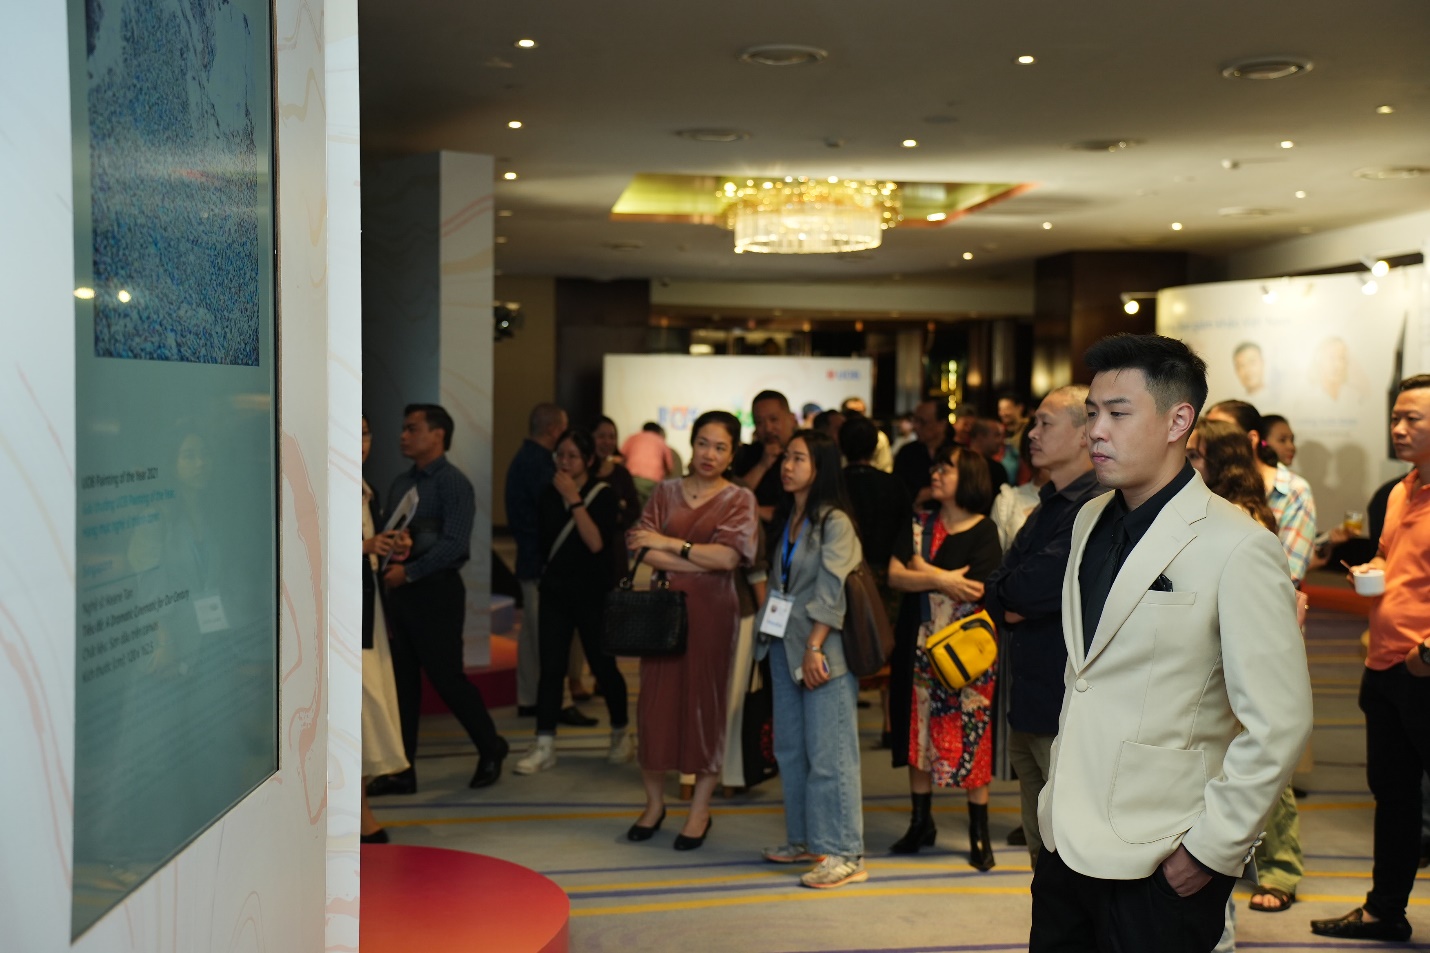 UOB khởi động cuộc thi nghệ thuật cấp khu vực ‘UOB Painting of the Year’ tại Việt Nam - Ảnh 1.